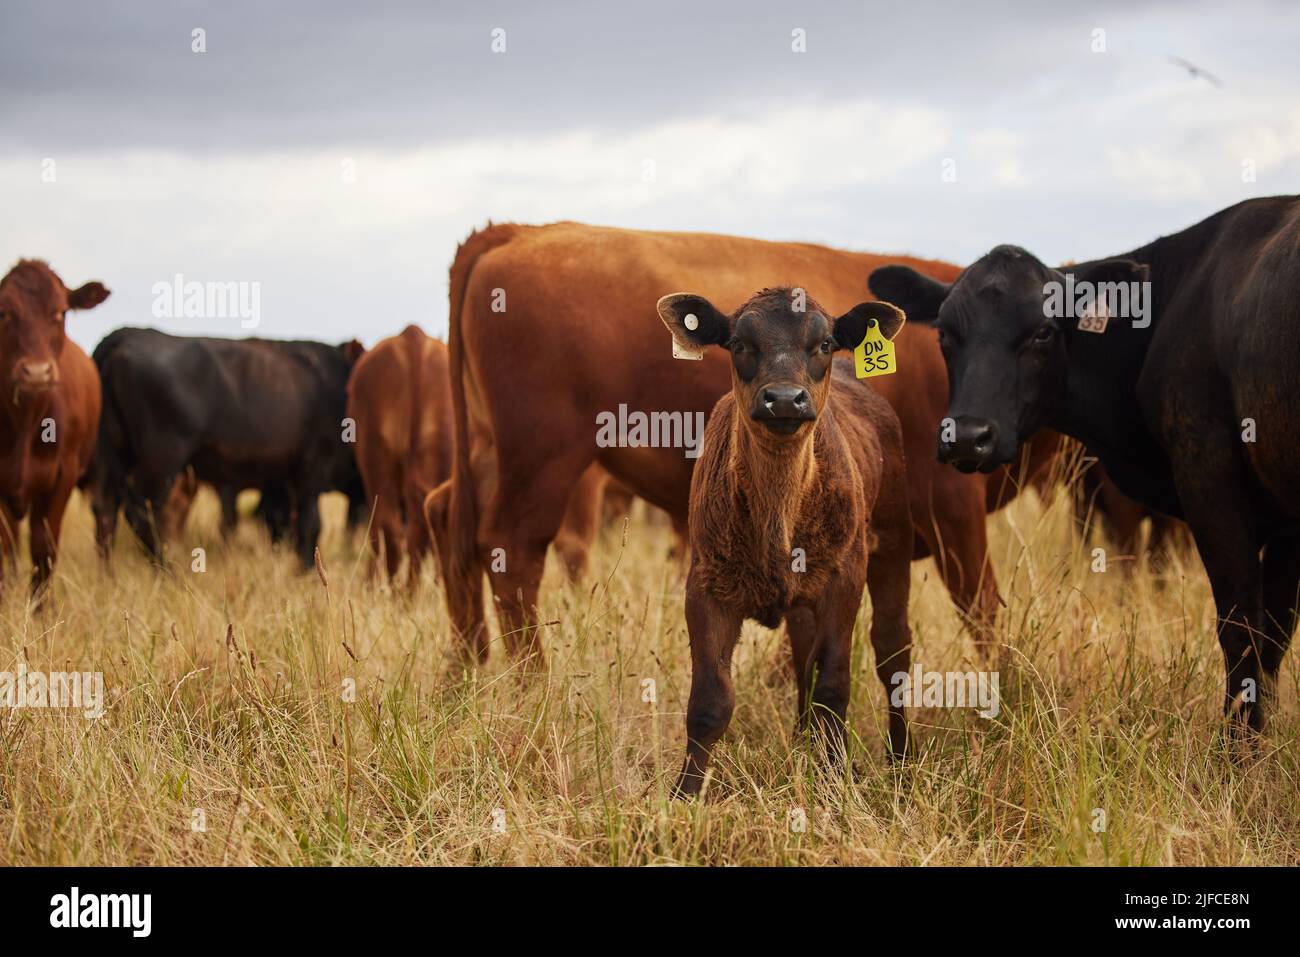 Eine Herde von braunen und schwarzen Kühen und Kälbern mit gelben Ohrmarken auf einer Rinderfarm. Eine Herde von braunen und schwarzen Kühen und Kälbern mit gelben Ohrmarken auf einem Stockfoto